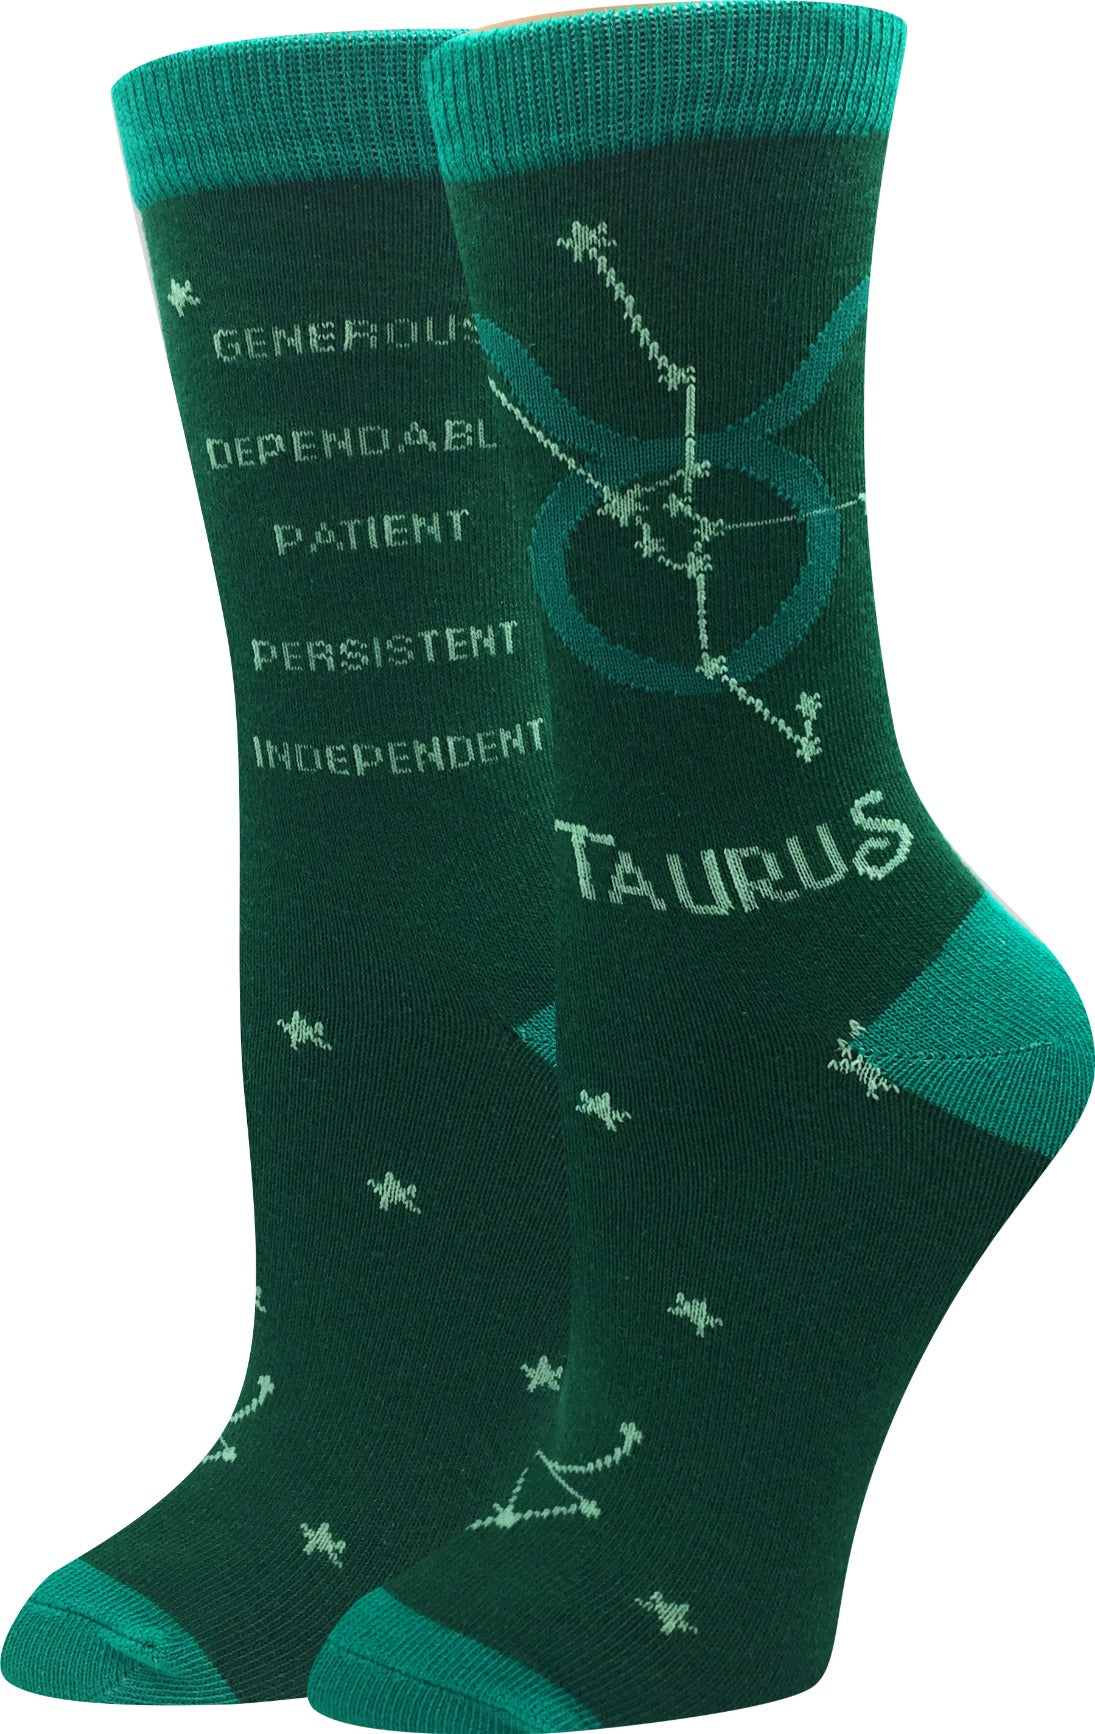 Taurus Socks